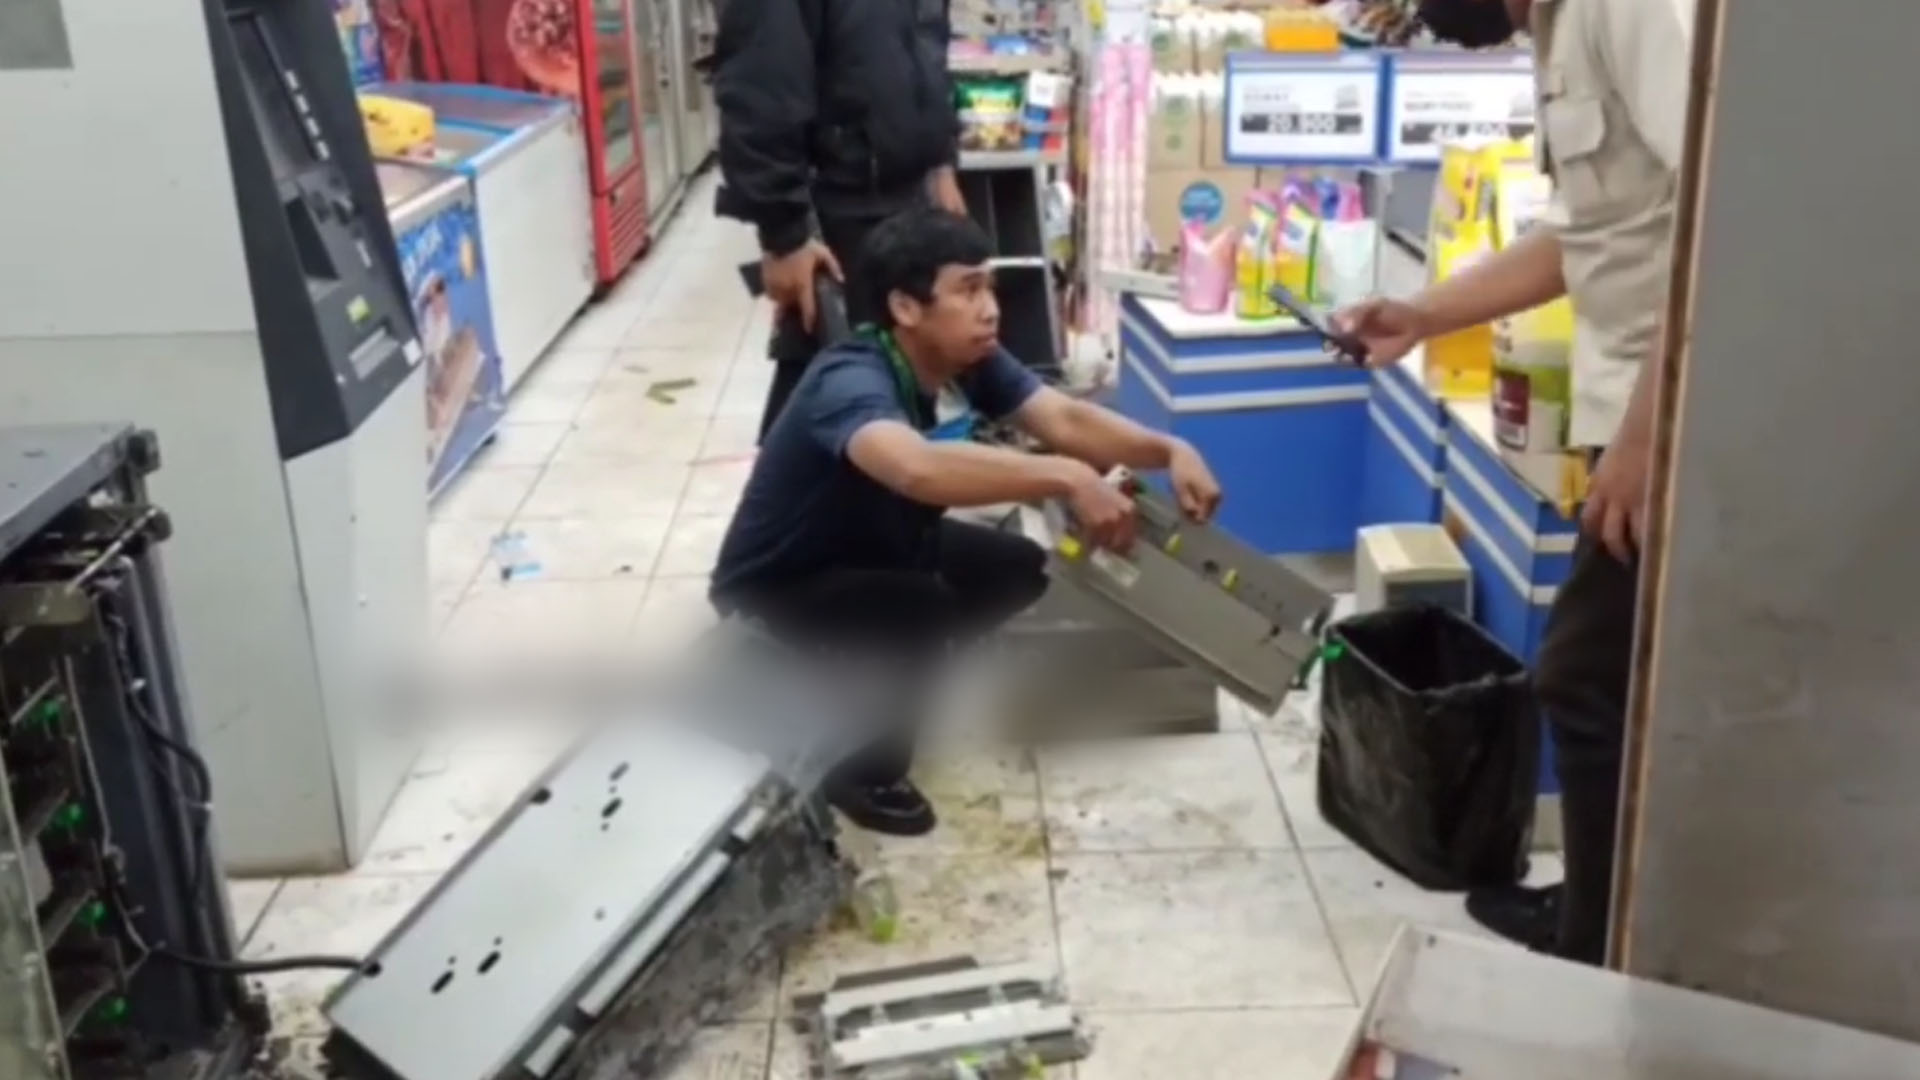 Kawanan Pencuri Bobol Indomaret dan Rusak Mesin ATM, Kerugian Capai 300 Juta